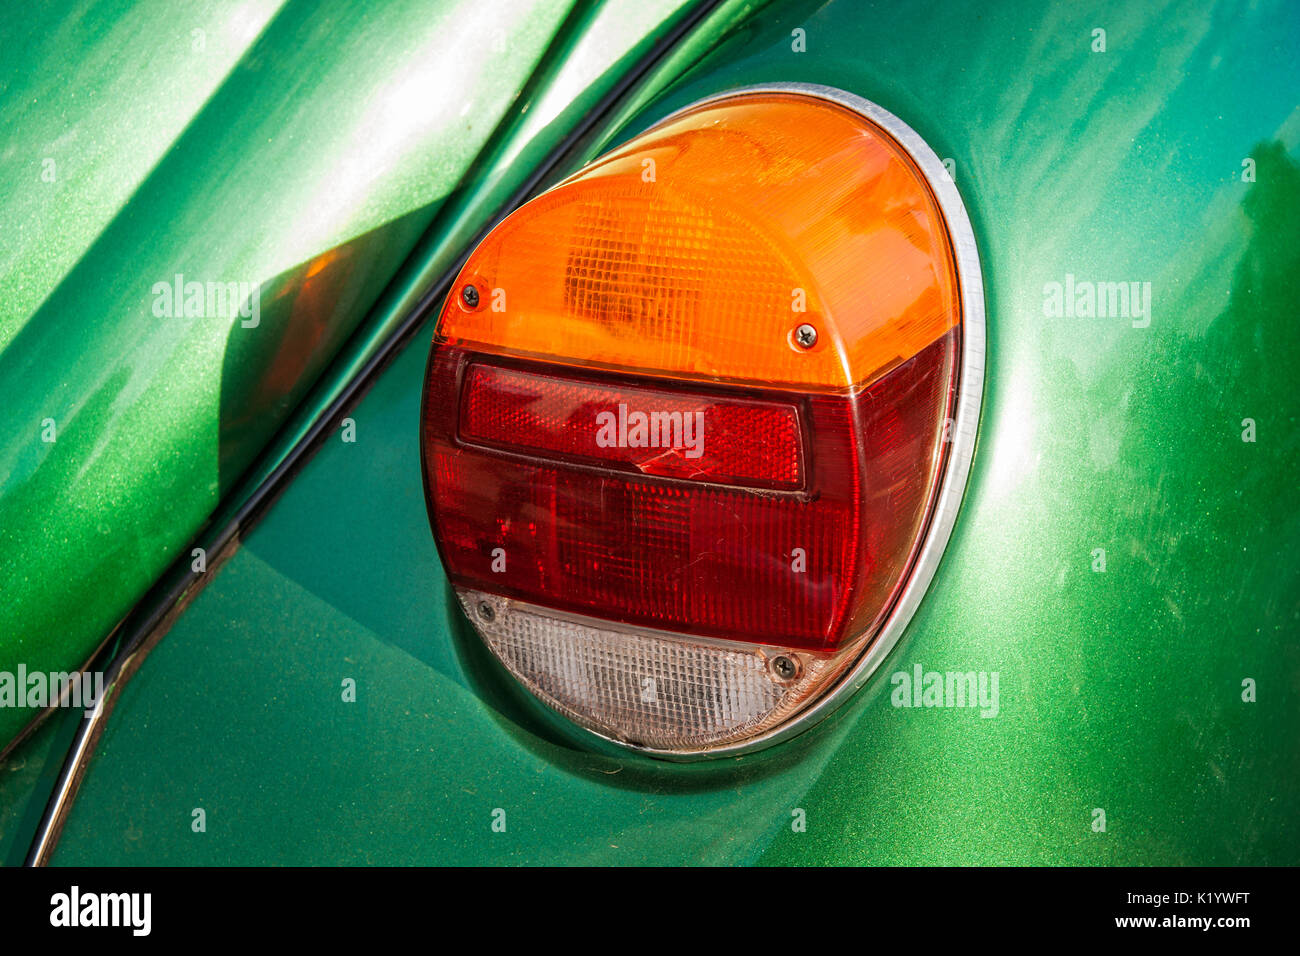 Detailansicht der hinteren Licht einer alten Vintage oder retro Auto.  Kontrast von Orange, Rot, Weiß und Grün. Sonnendurchflutete helle und  lebendige Szene Stockfotografie - Alamy